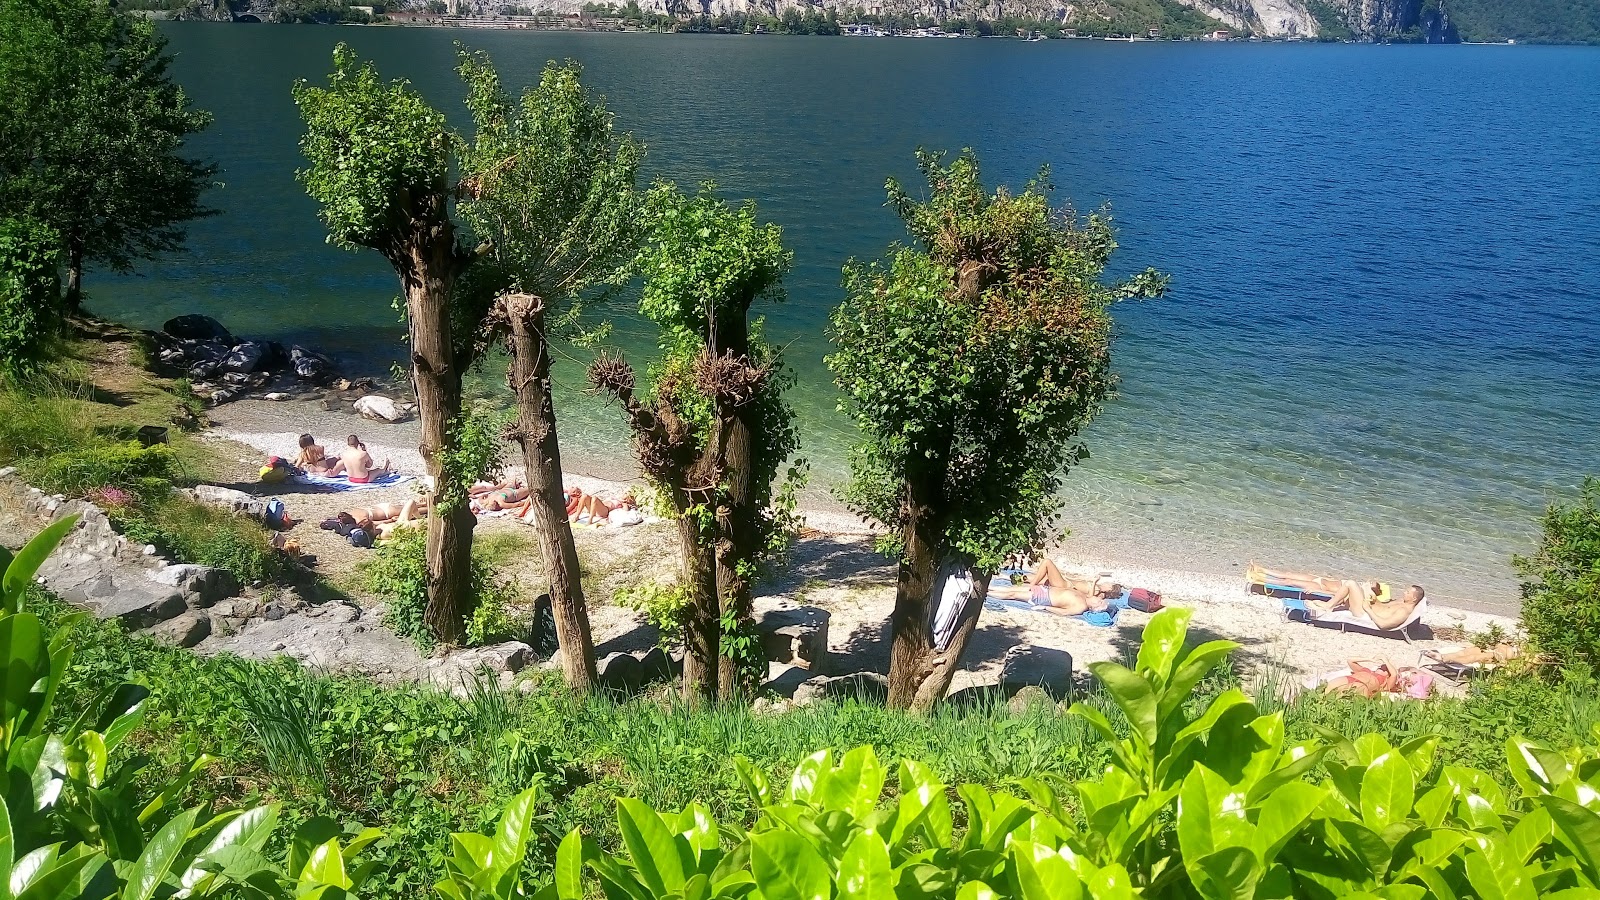 Foto av Spiaggia Abbadia Lariana med hög nivå av renlighet